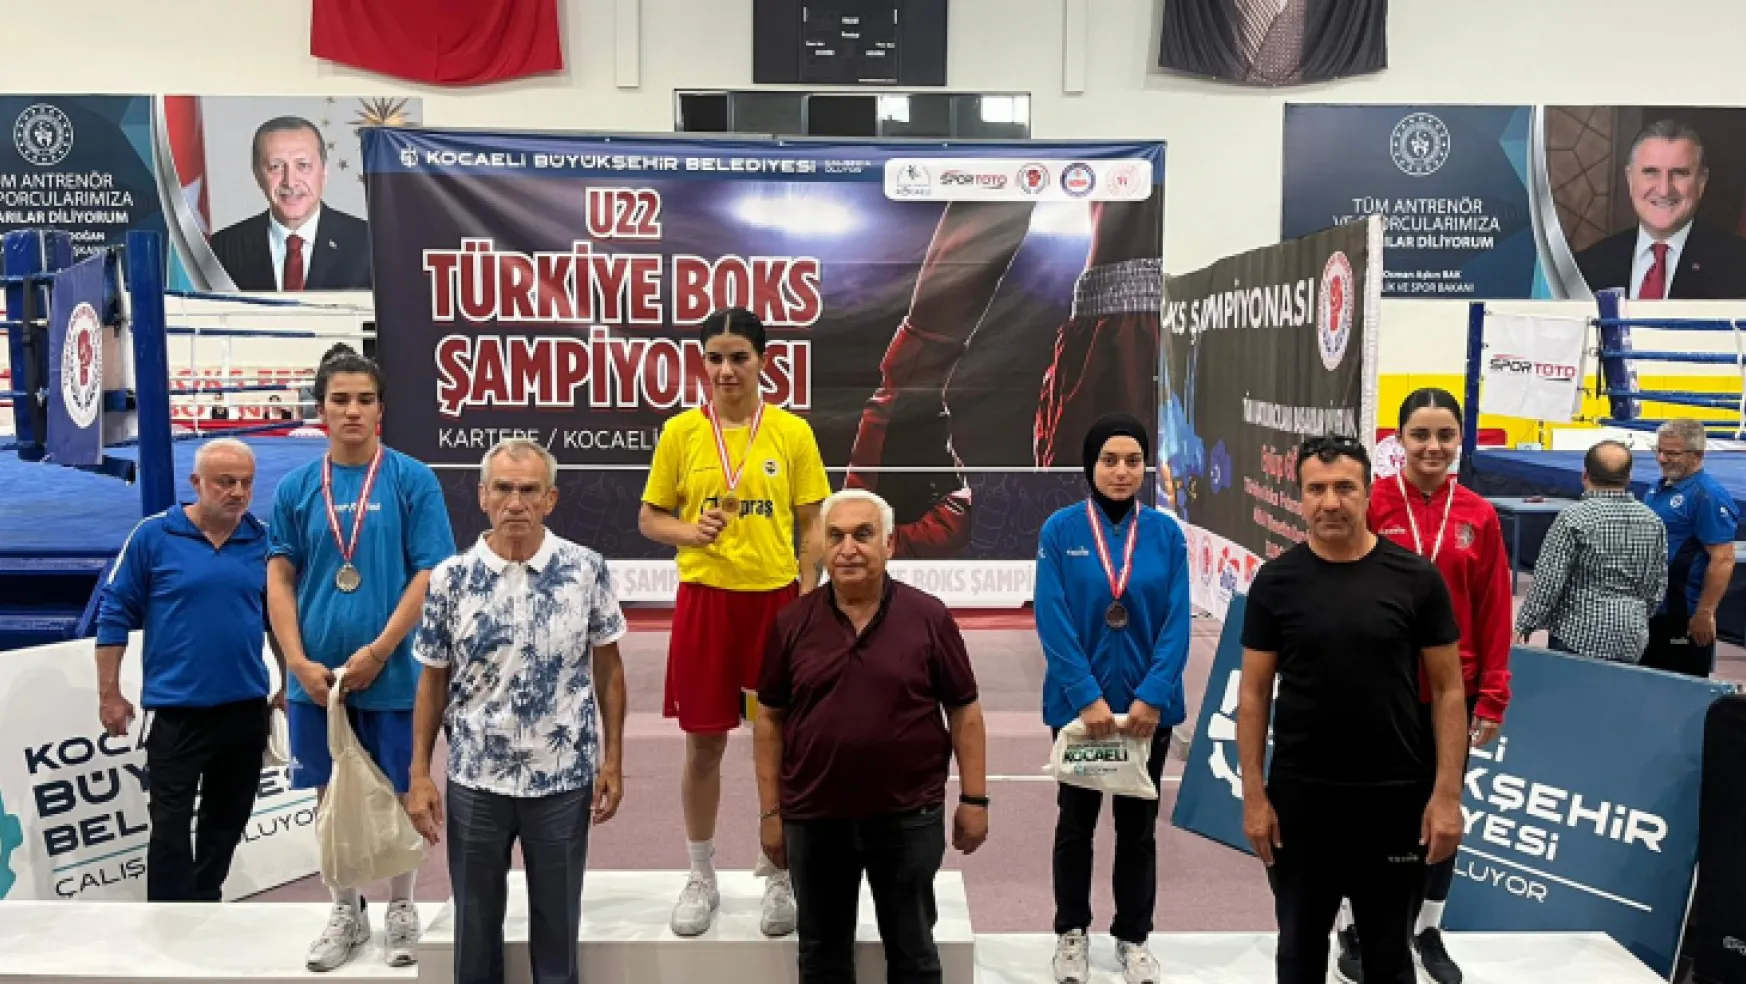 Malatyalı Nurgül Güzel 60 kg'da U22 Türkiye Boks şampiyonasında üçüncü oldu.